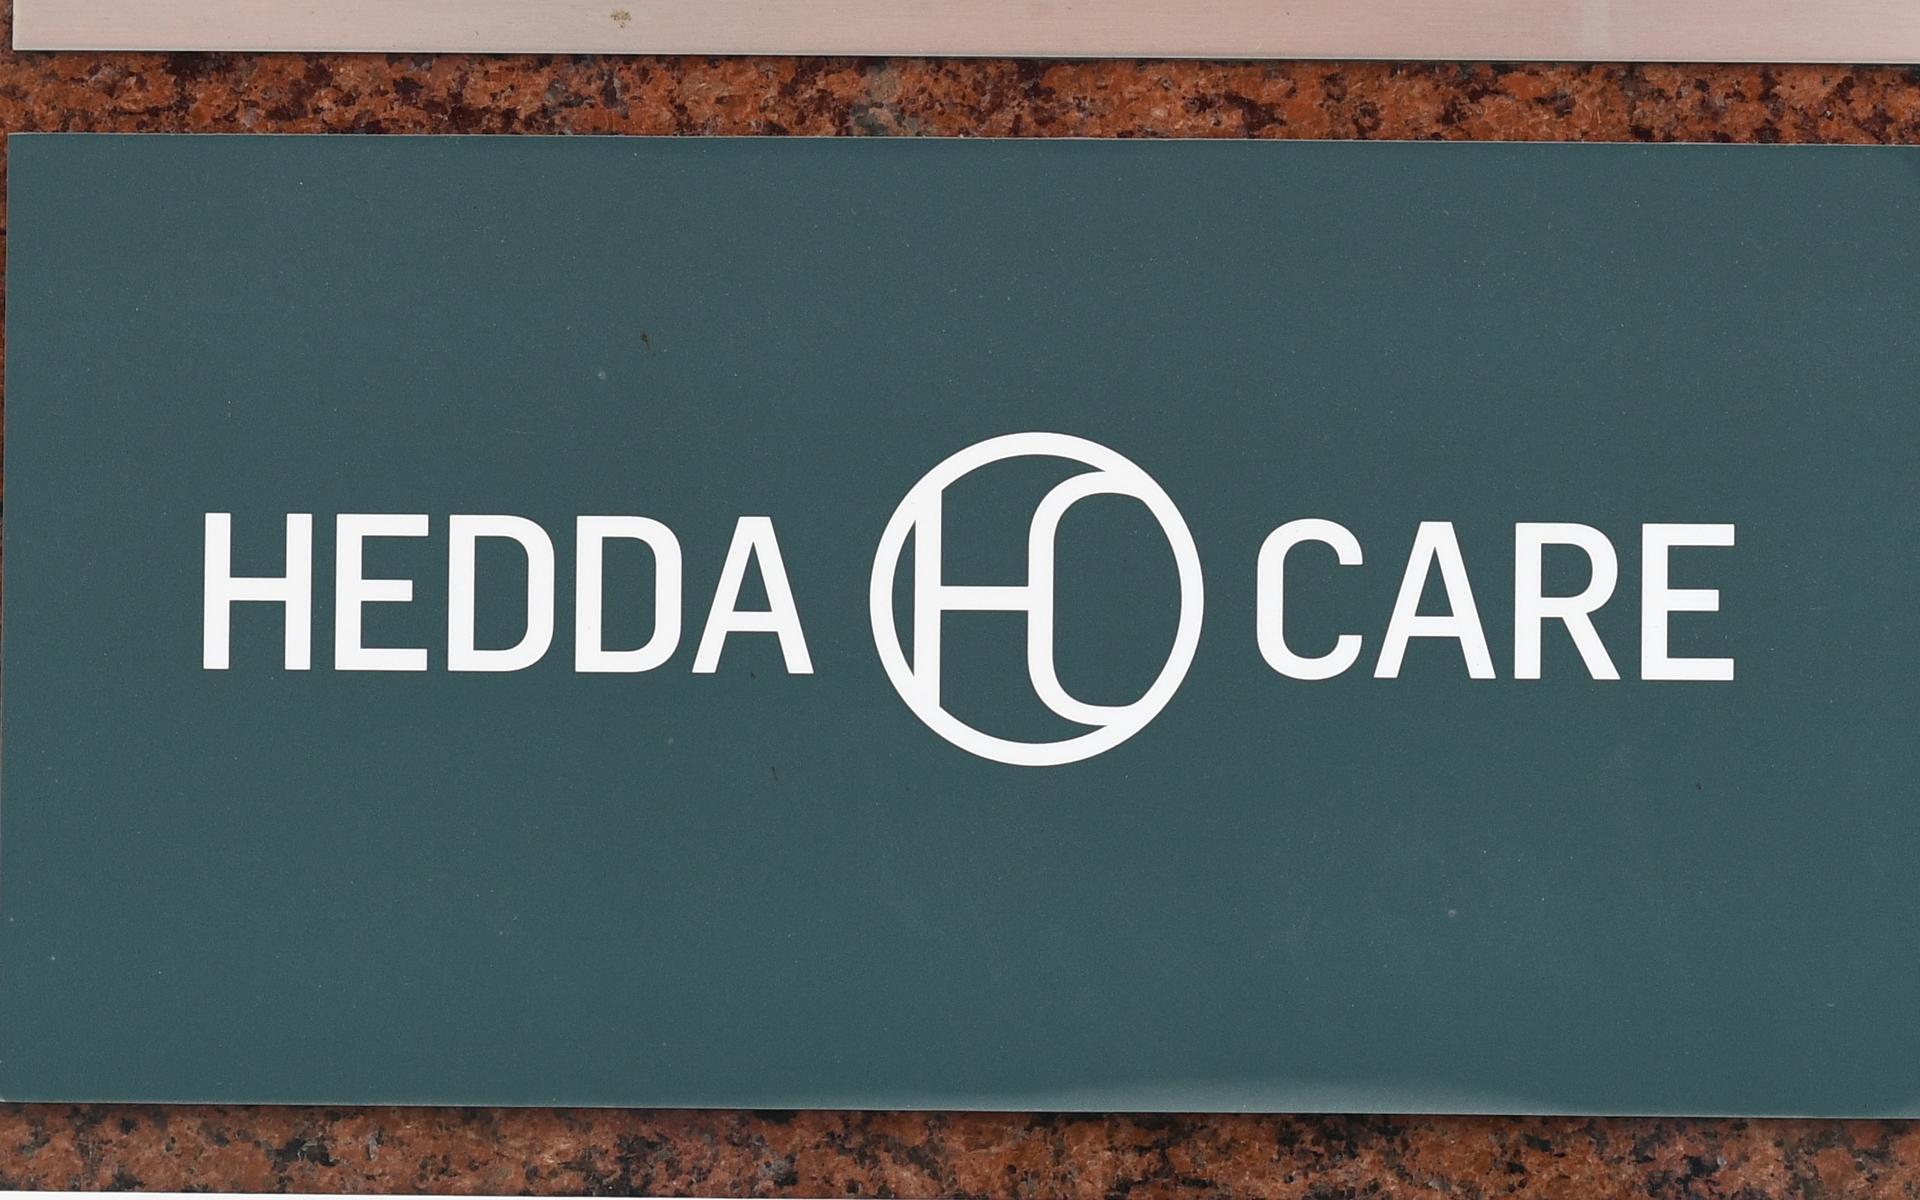 Hedda Care har varit i blåsväder för sina antikroppstester och är föremål för granskning hos IVO.